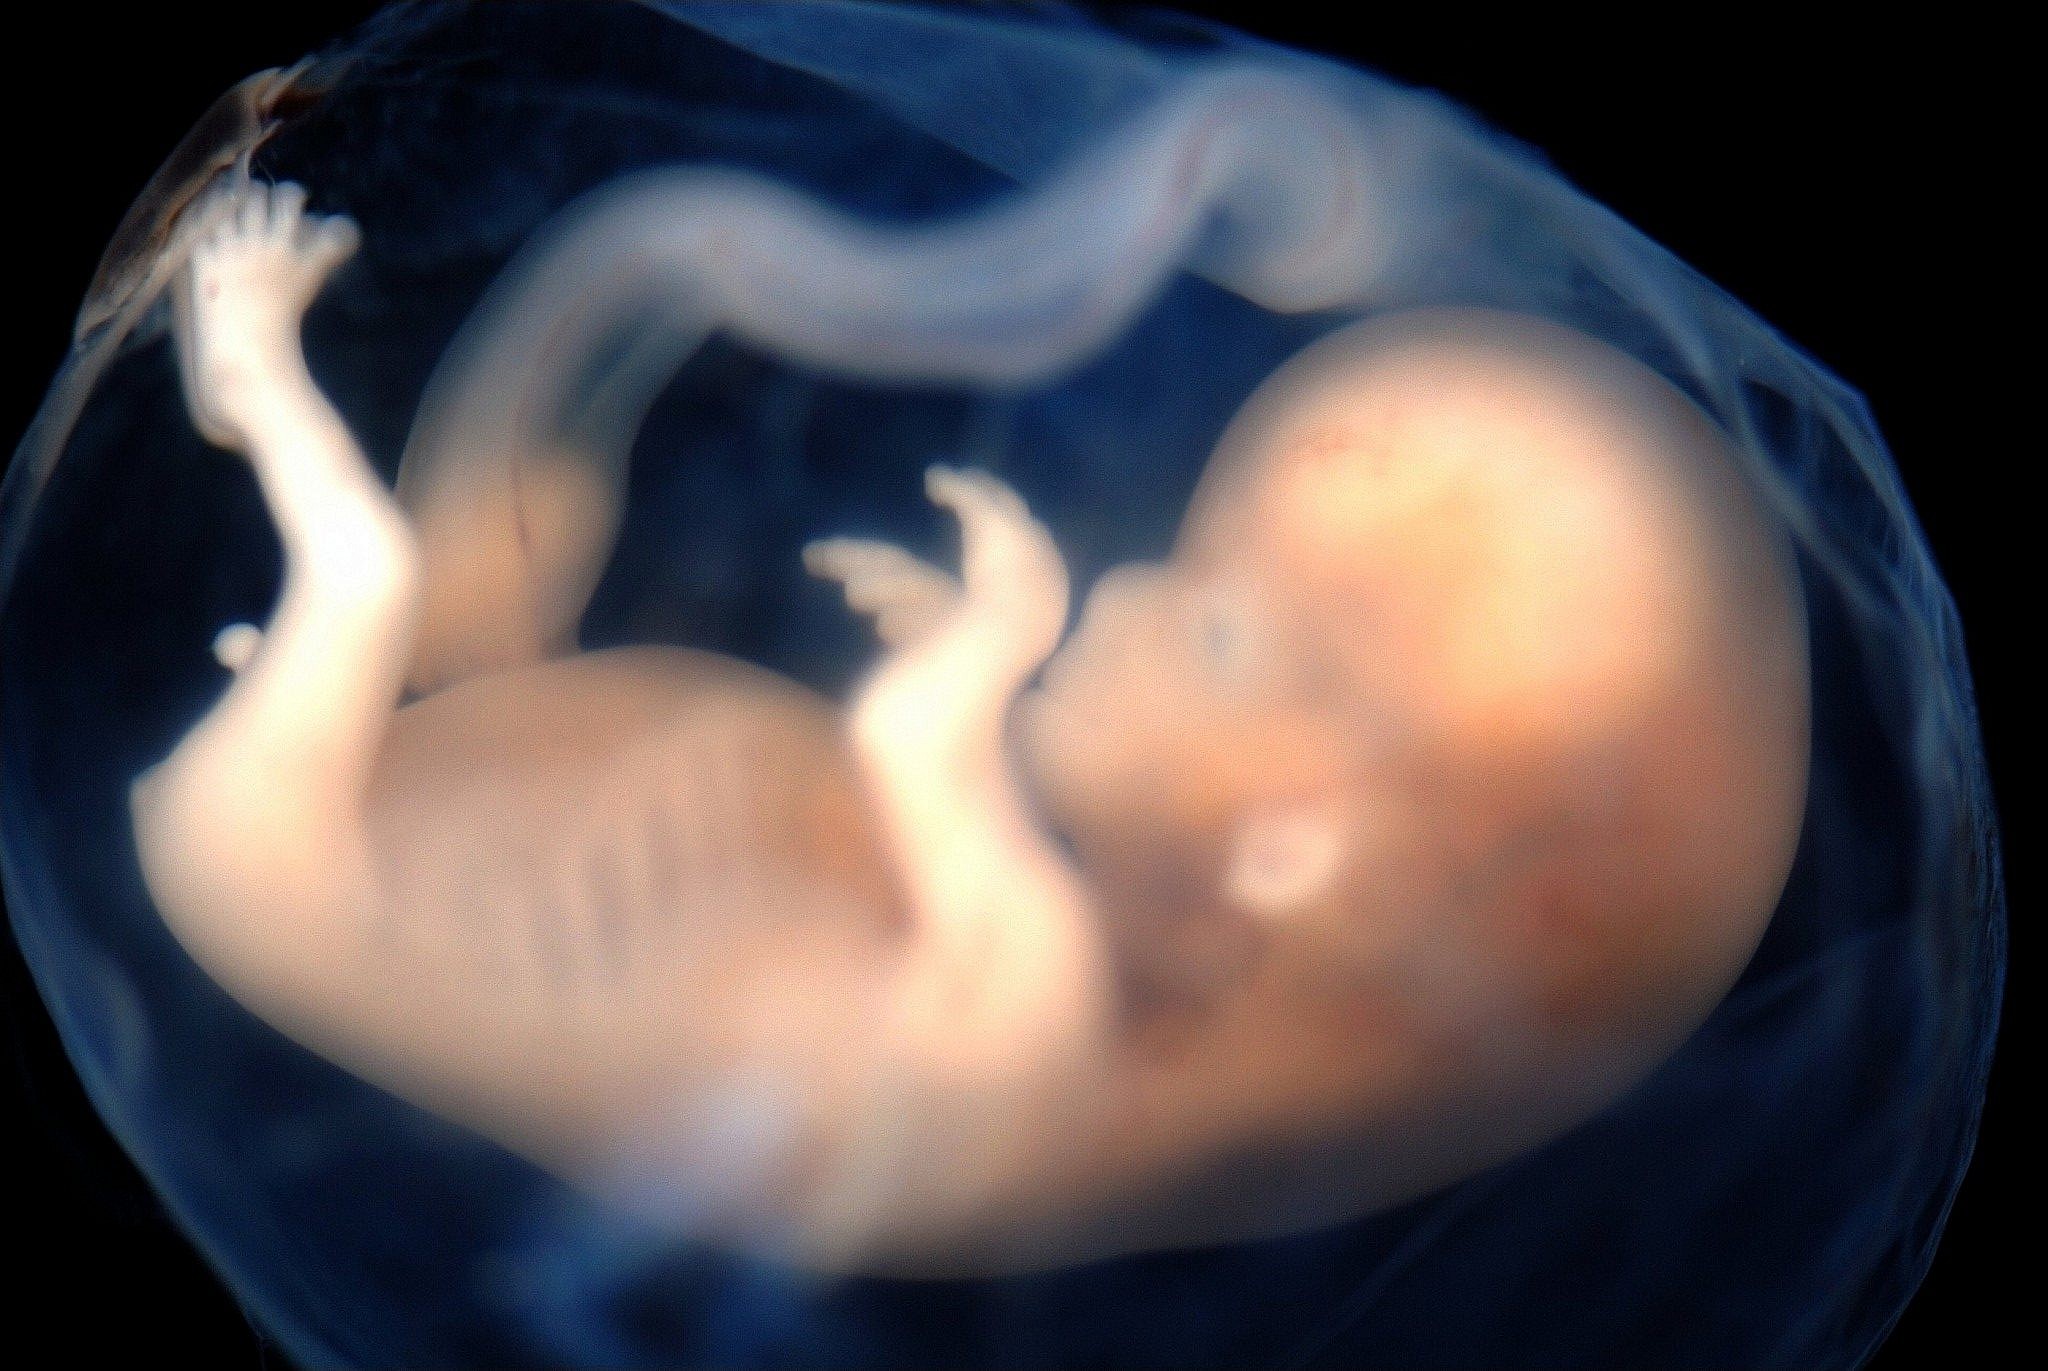 israeli-team-develops-way-to-find-genetic-flaws-in-fetus-at-11-weeks